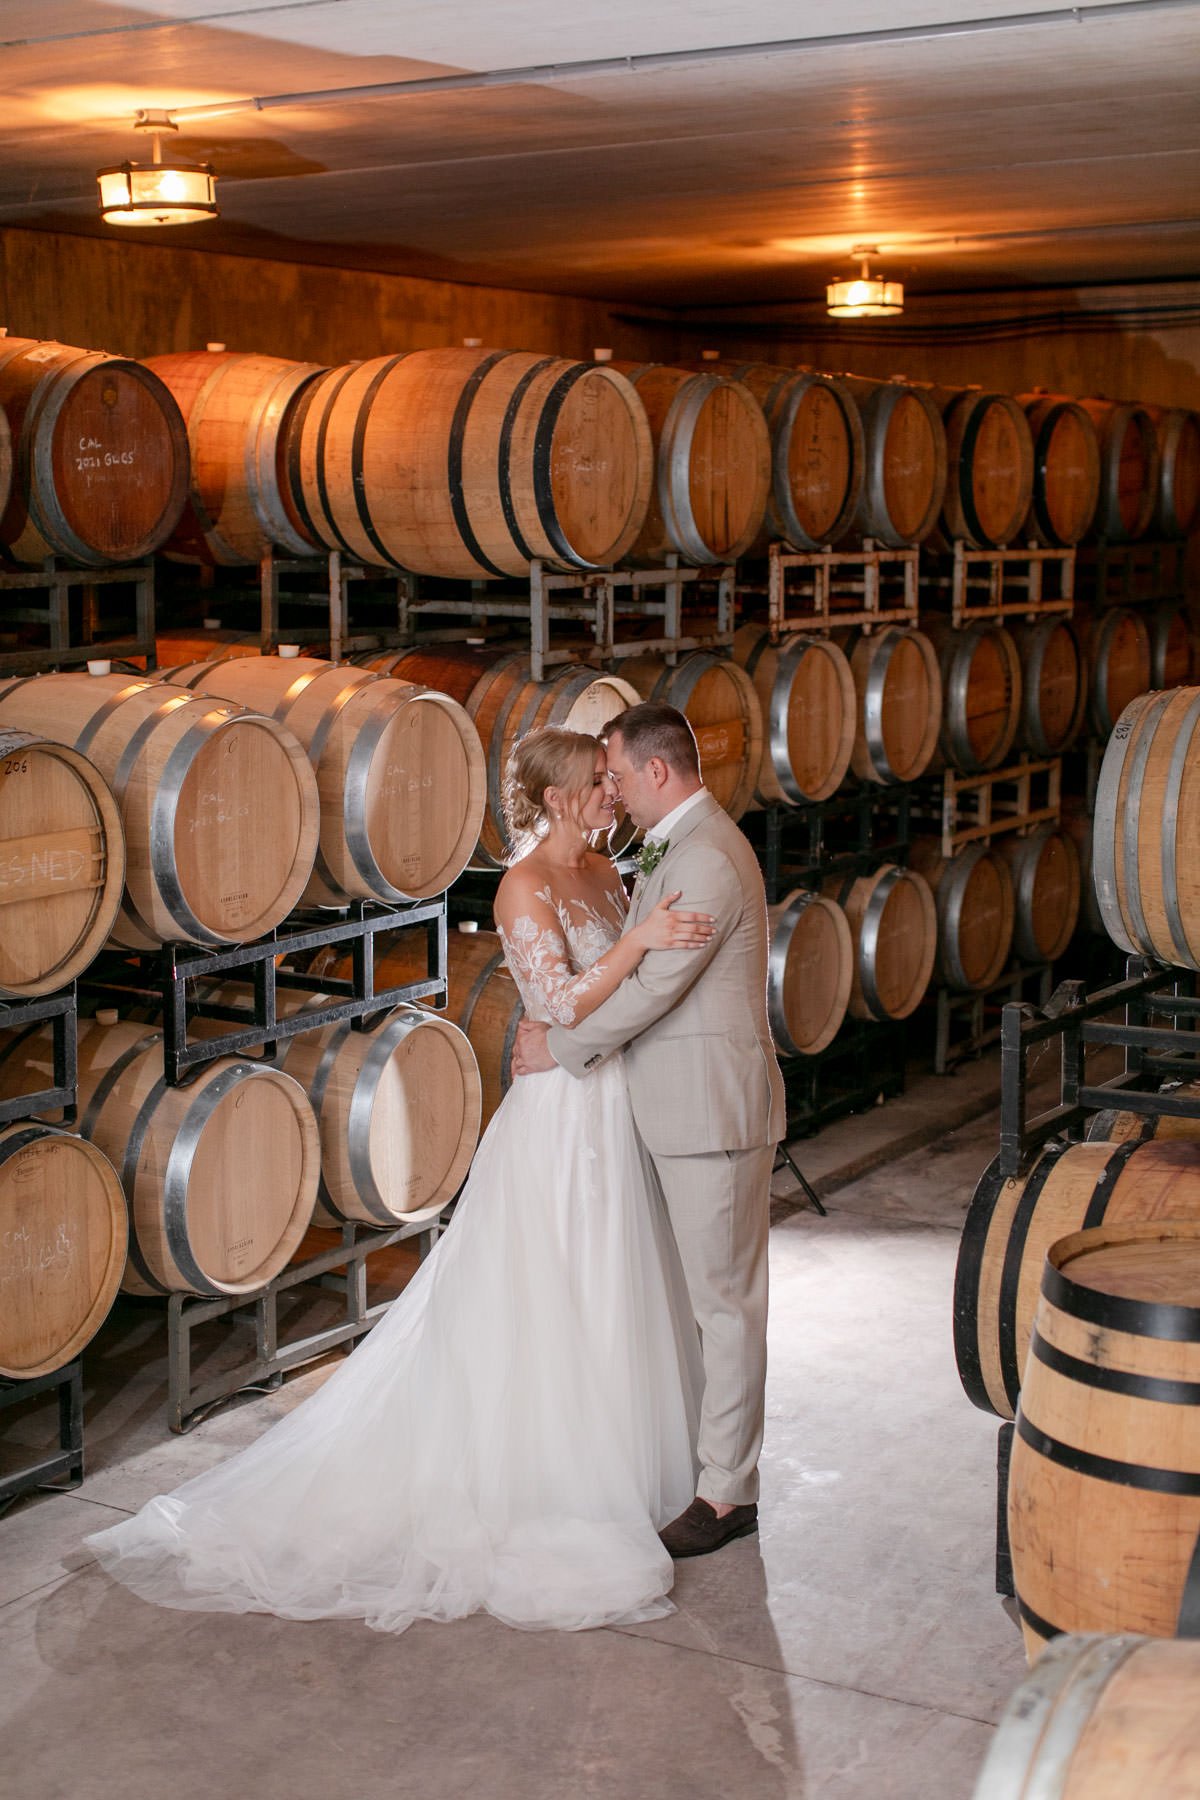 Calamus-Winery-Wedding-Vineyard-Bride-Photo-by-Philosophy-Studios-081.JPG